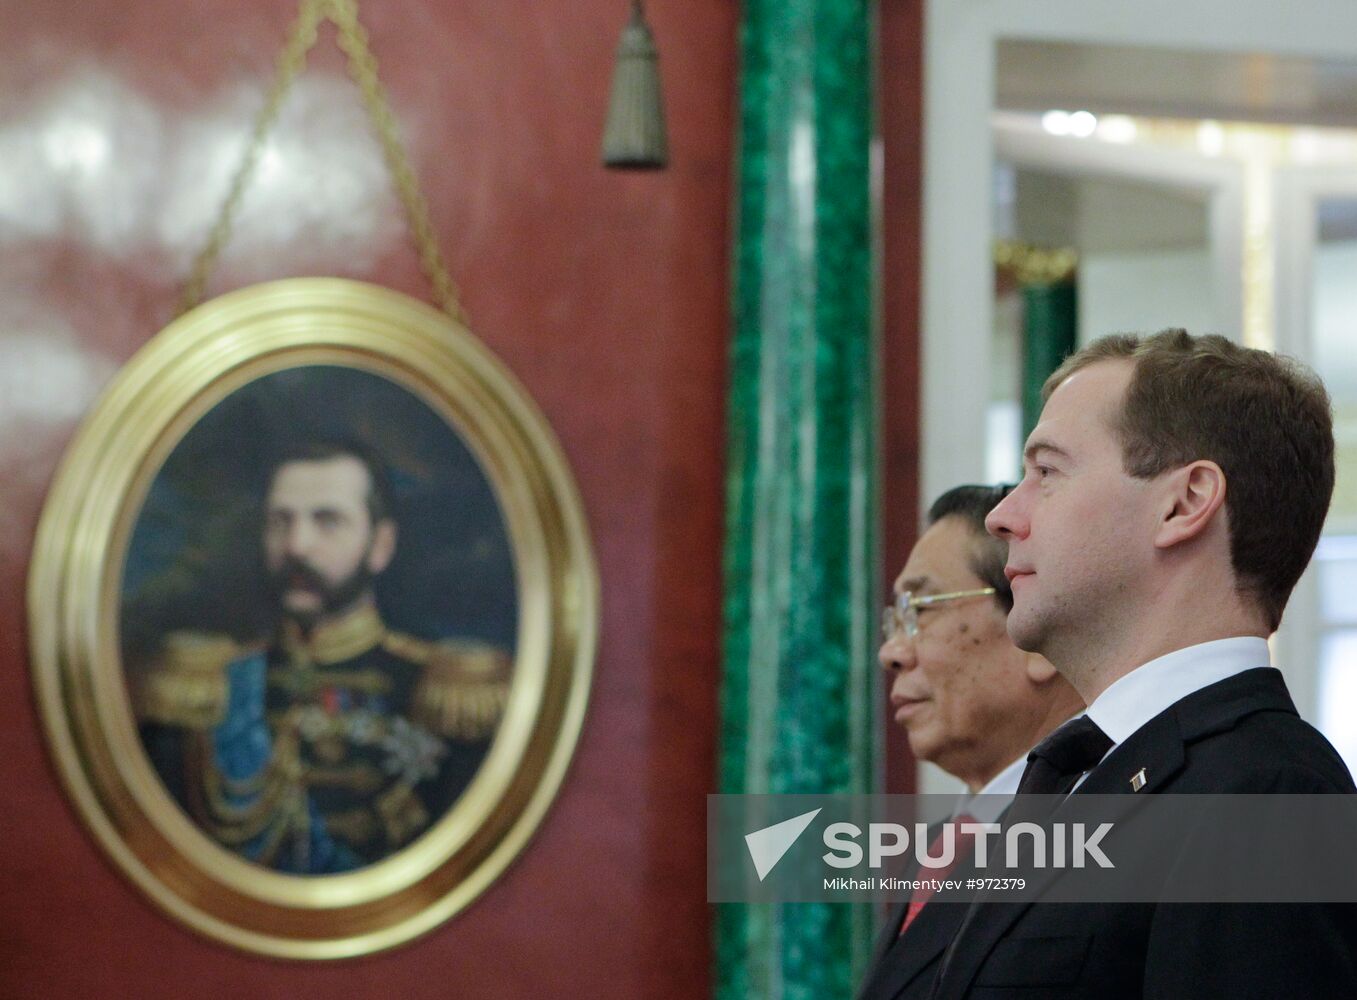 Kremlin talks between Dmitry Medvedev and Choummaly Sayasone